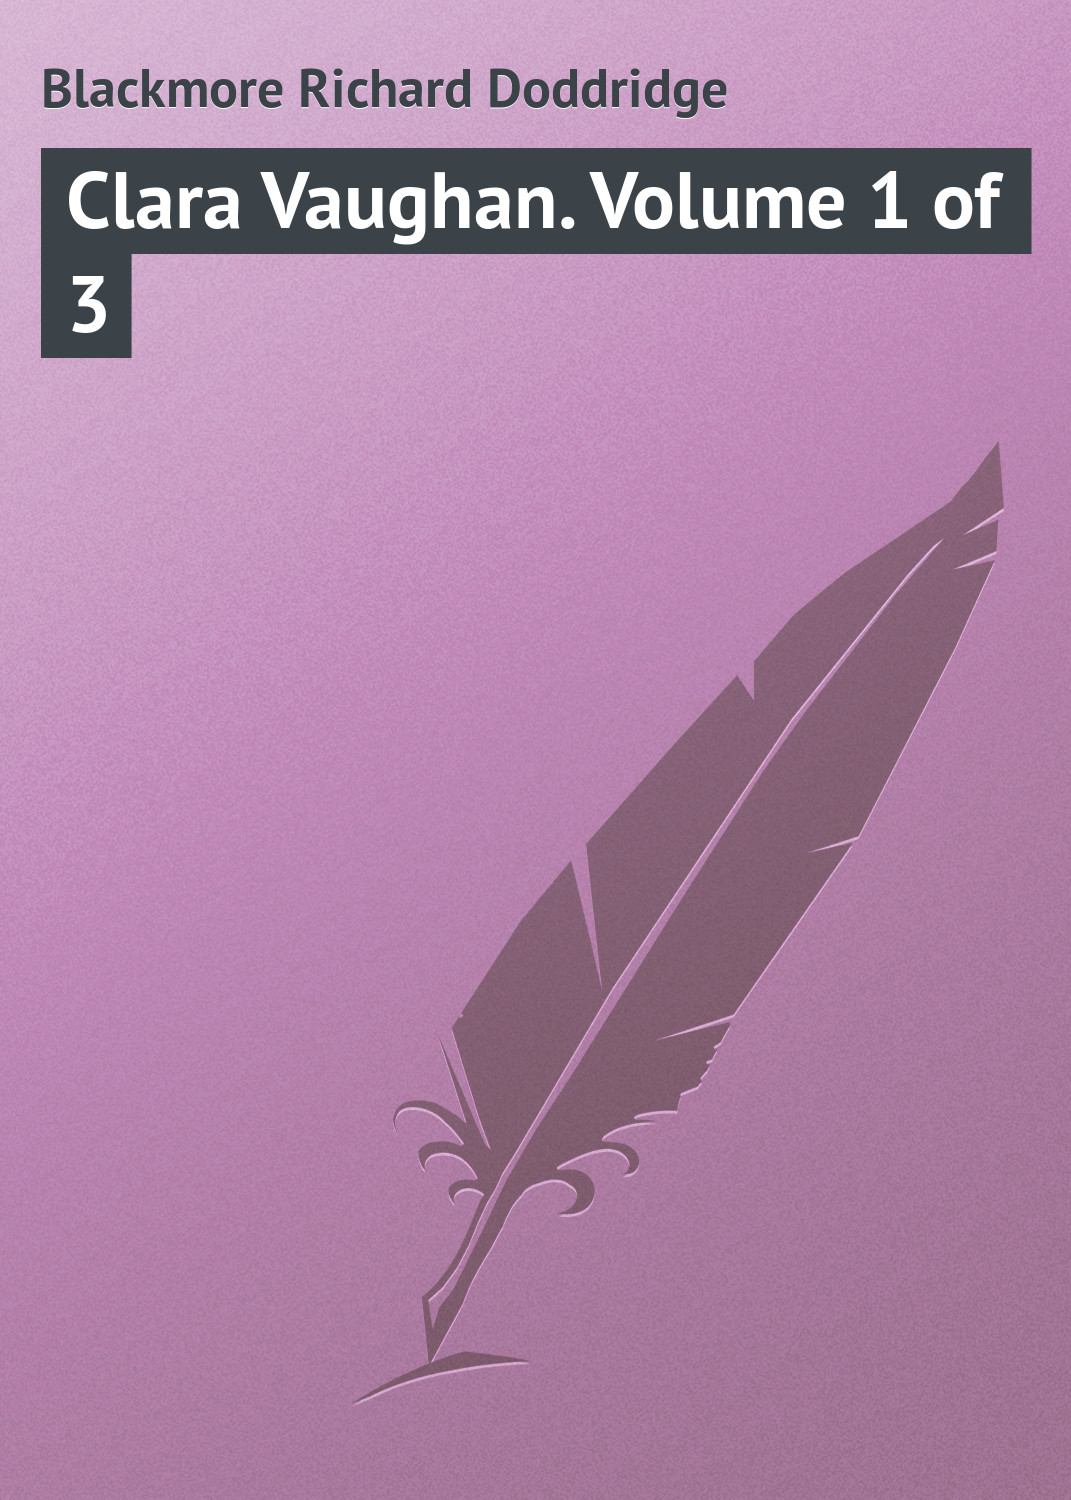 Книга Clara Vaughan. Volume 1 of 3 из серии , созданная Richard Blackmore, может относится к жанру Зарубежная классика. Стоимость электронной книги Clara Vaughan. Volume 1 of 3 с идентификатором 23148283 составляет 5.99 руб.